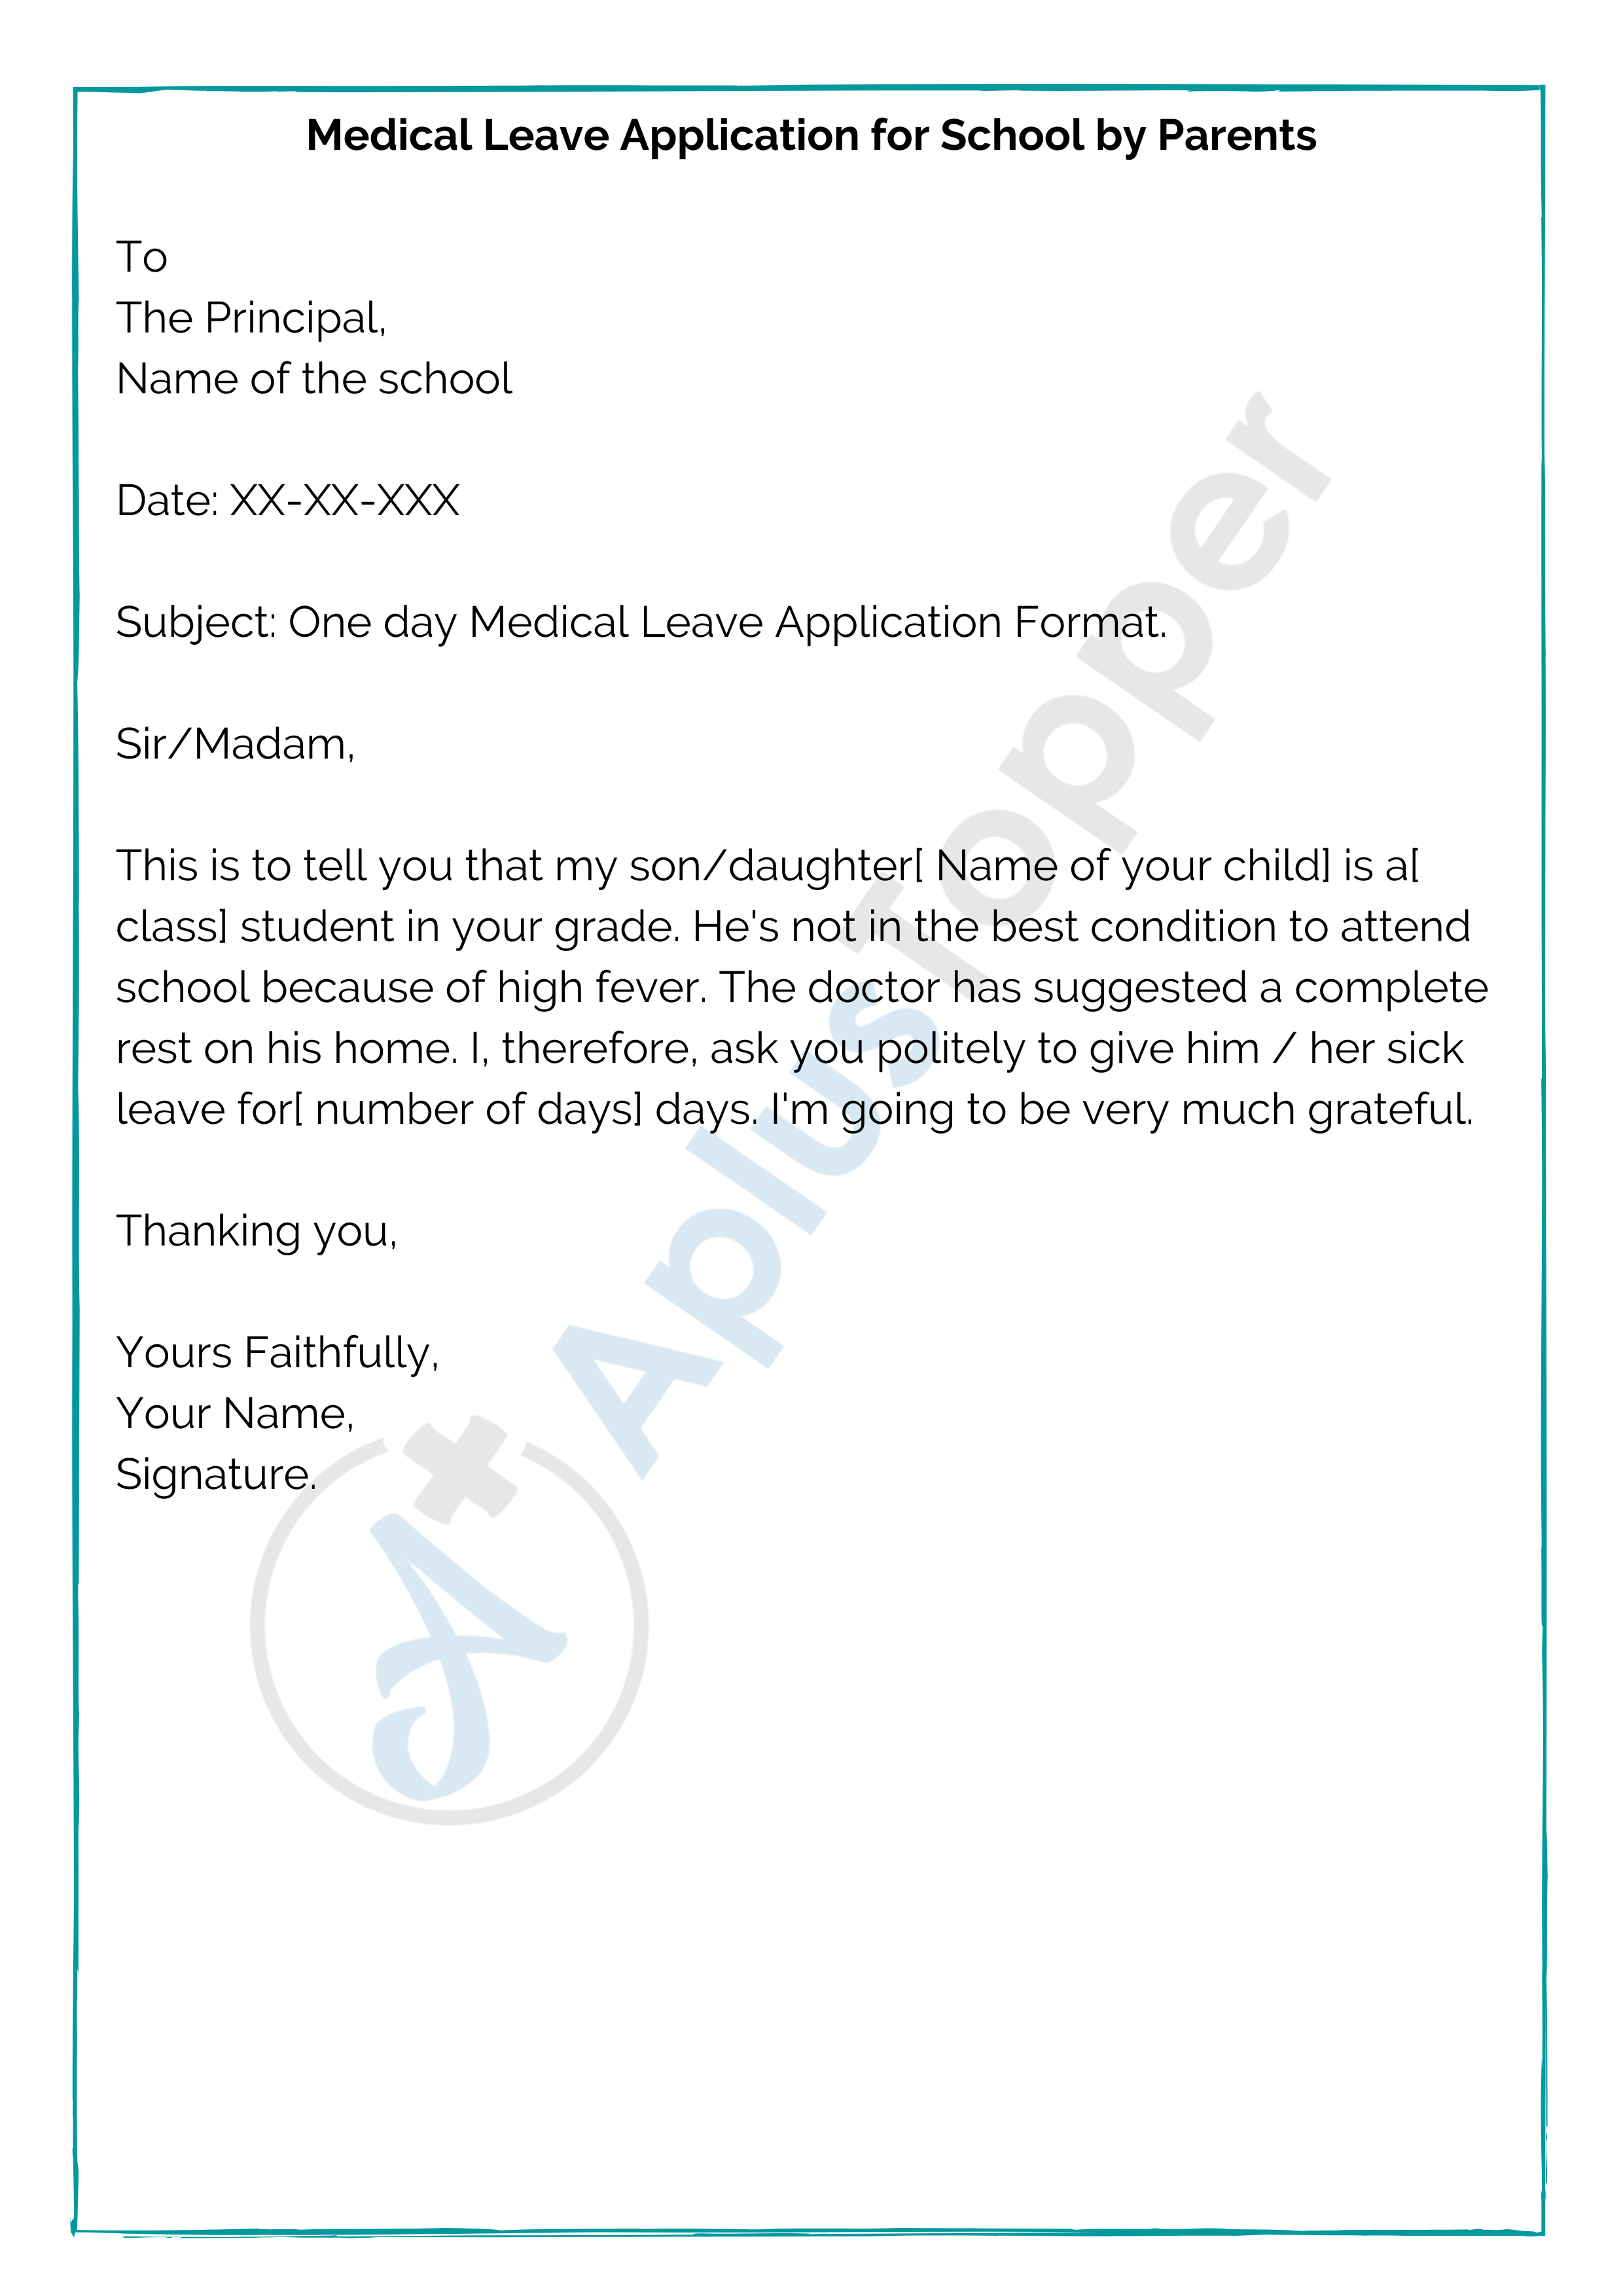 medical leave application letter for school